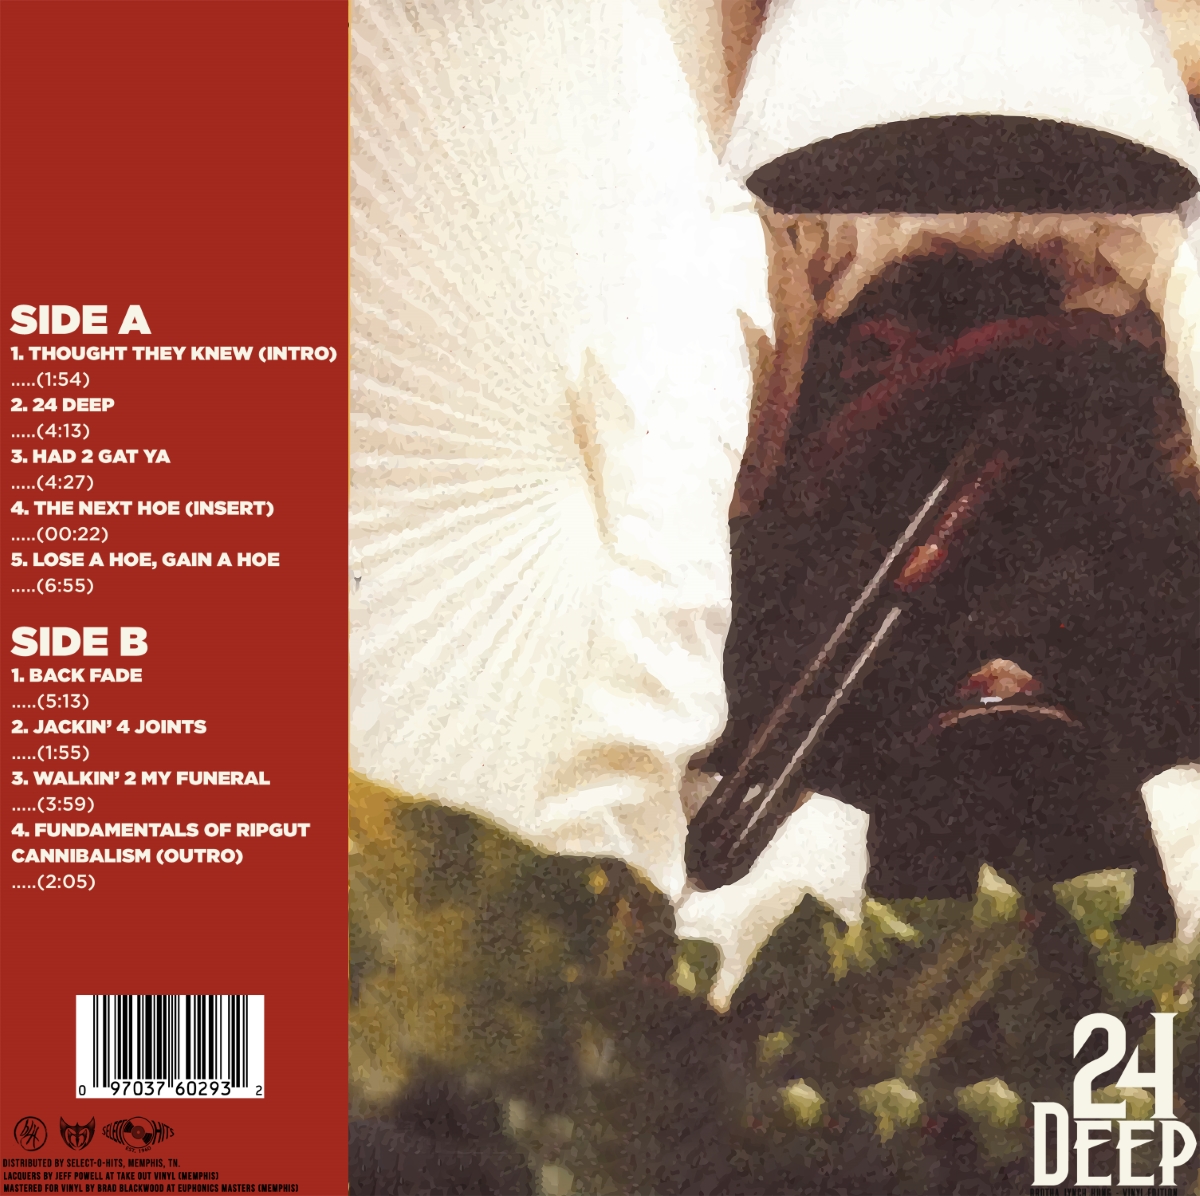 24 Deep (LP)